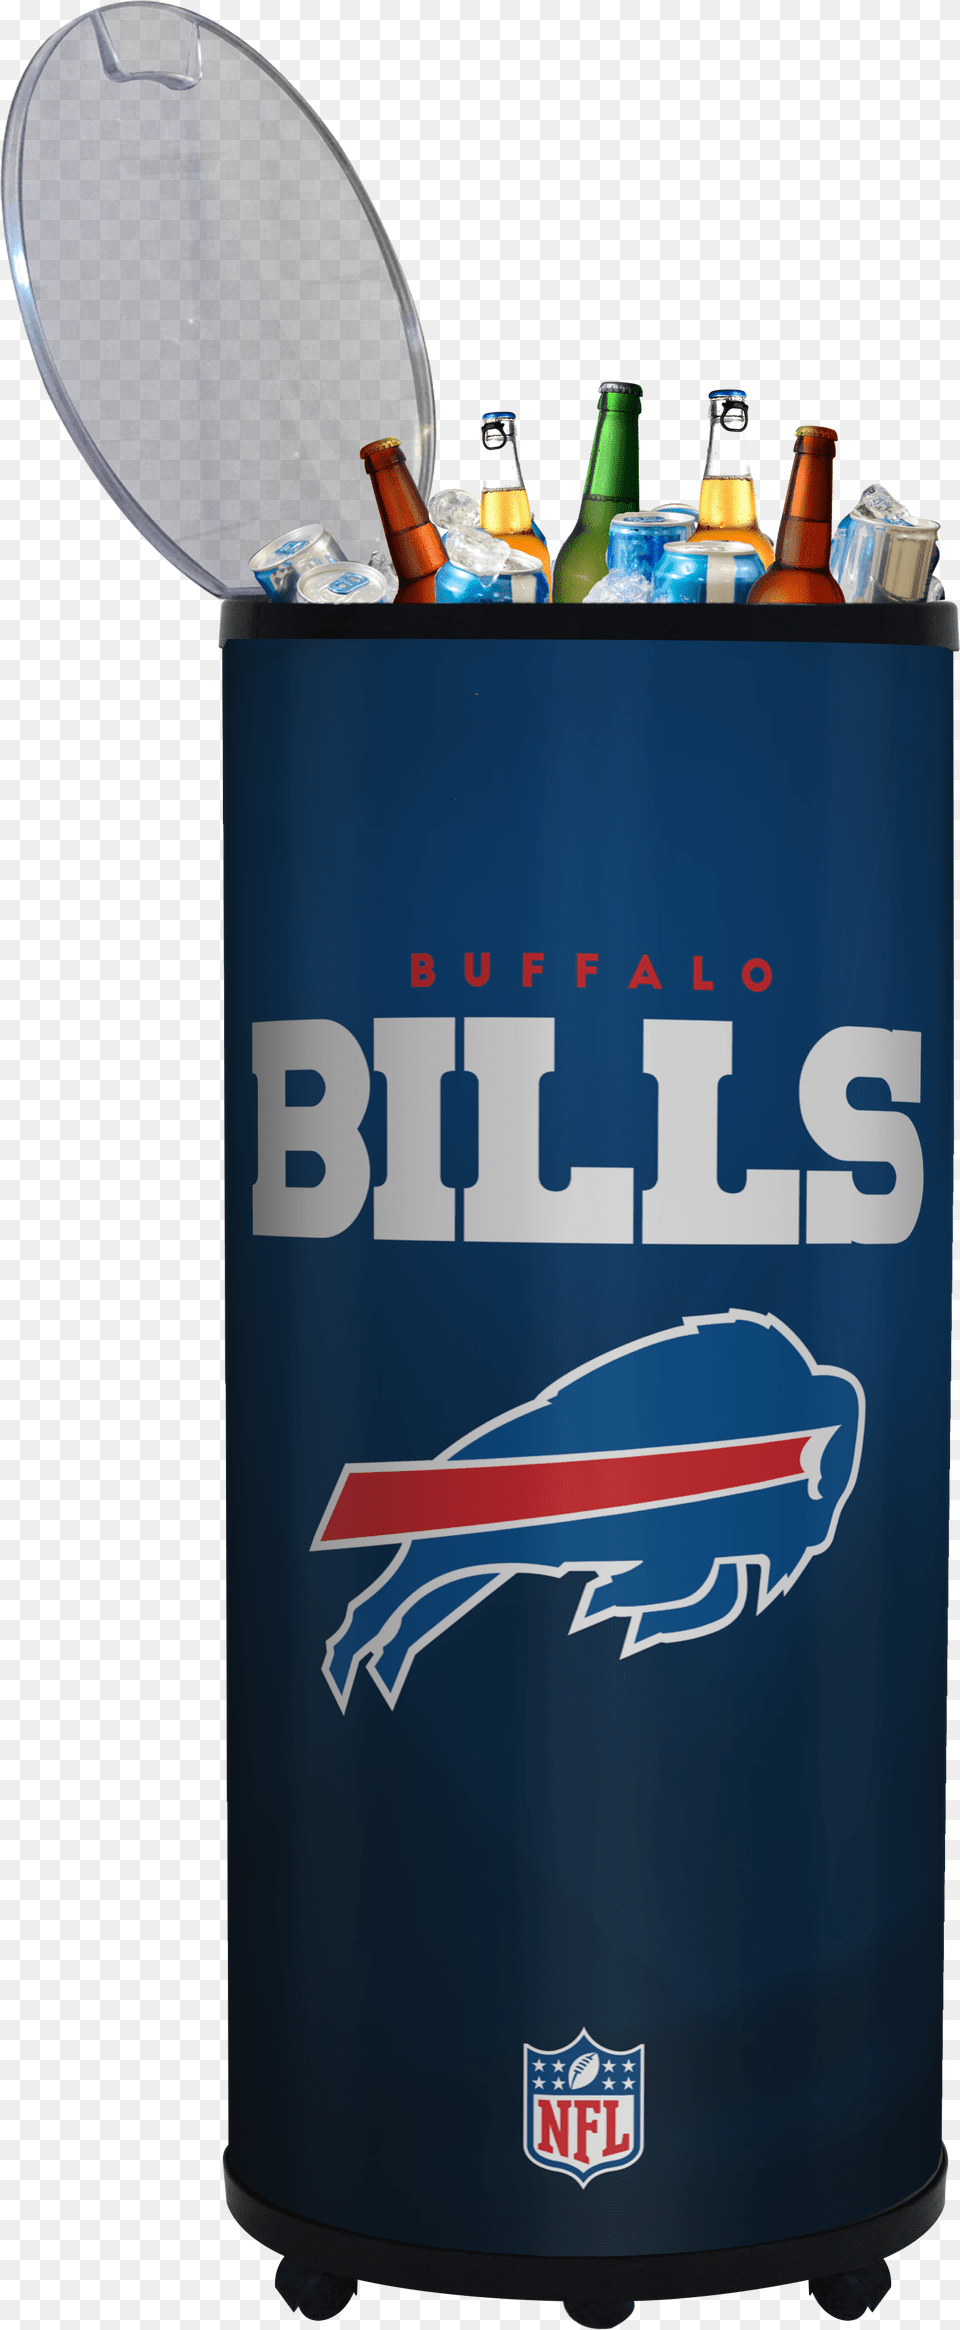 Buffalo Bills Poster, Bottle, Alcohol, Beer, Beverage Free Png Download